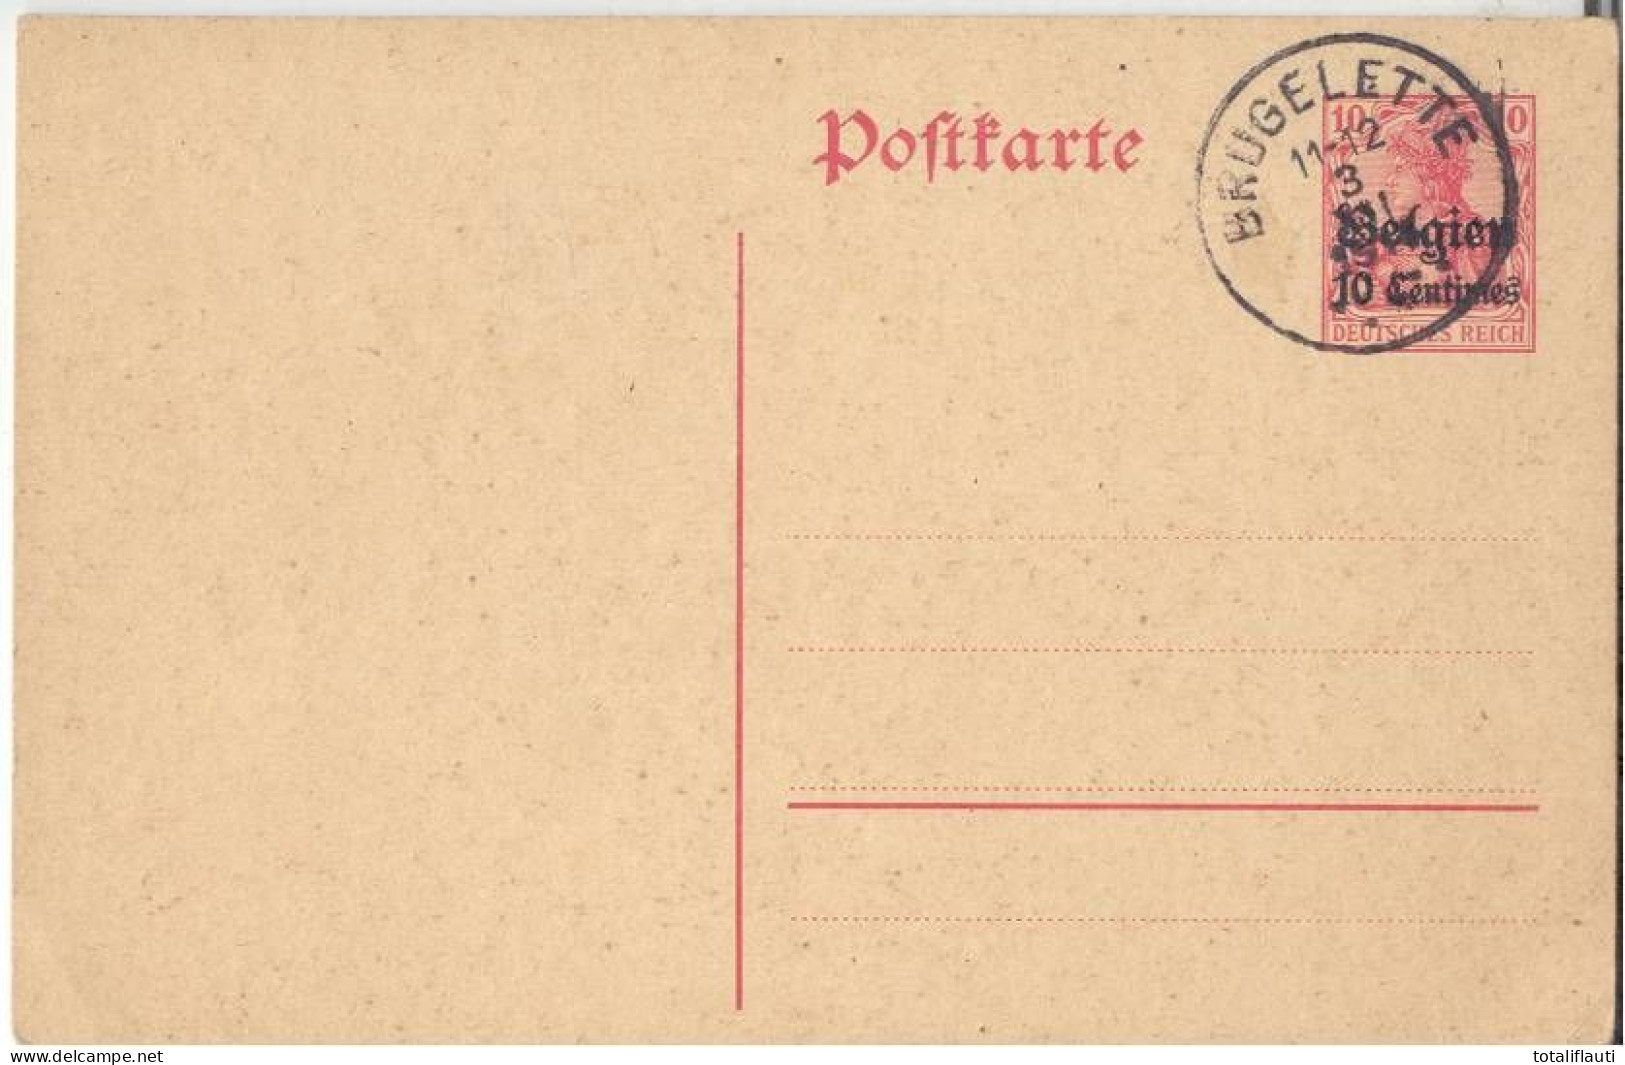 Ganzsache Deutsches Reich 10 Pfennig Überdruck Belgien 10 Centimes Mit Ortsstempel BRUGELETTE 3.8.1915 Ungelaufen - Army: German